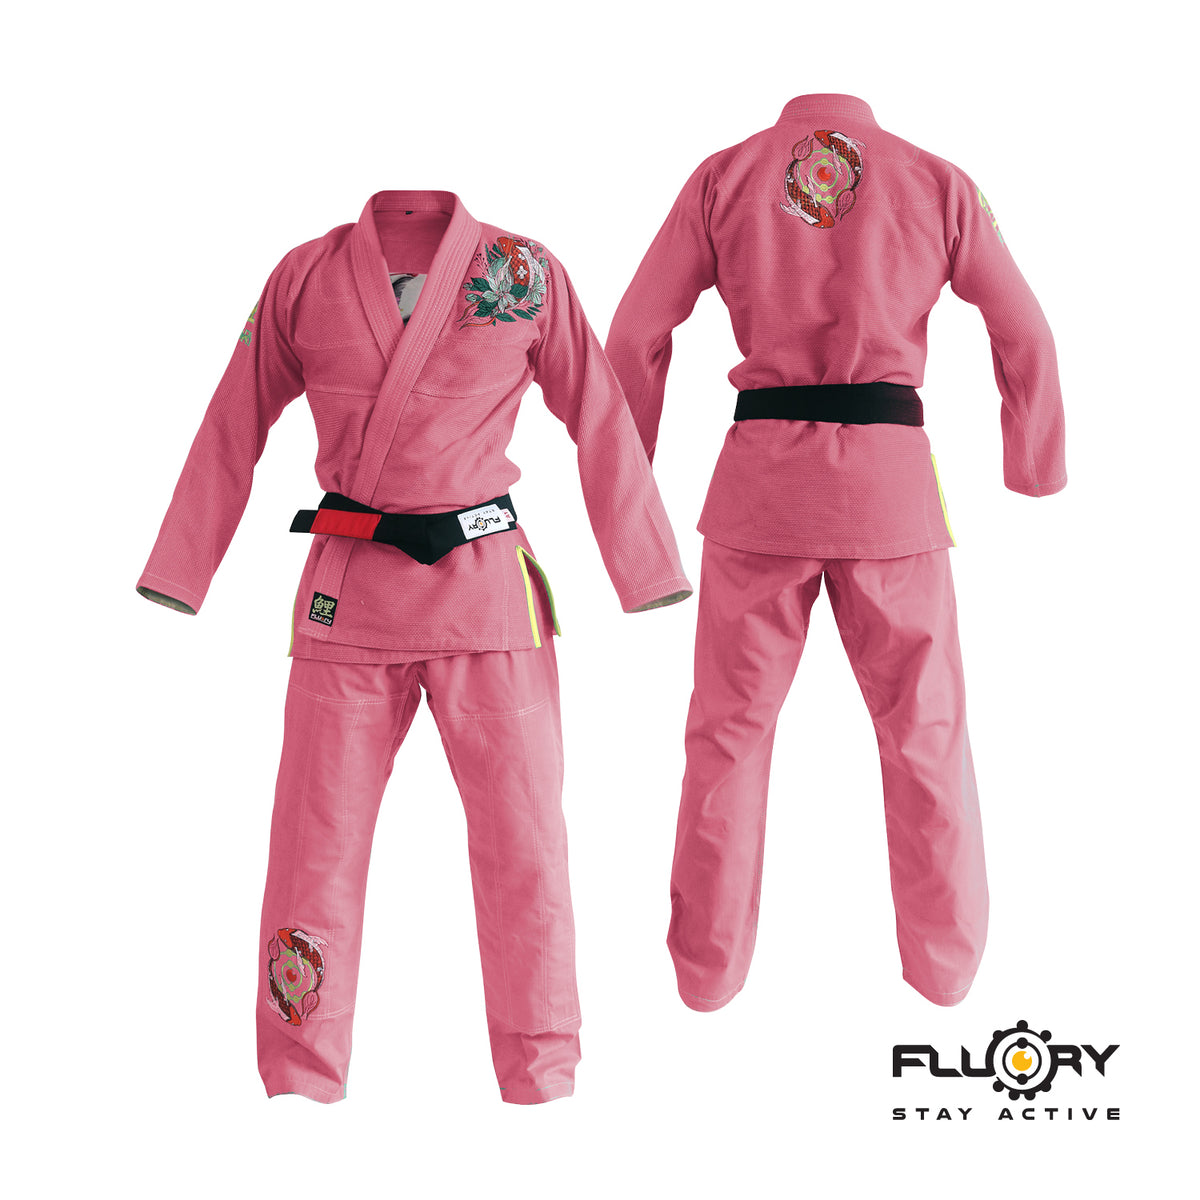 FLUORY Lightweight BJJ Gi,Brazilian Jiu Jitsu Uniform for Men